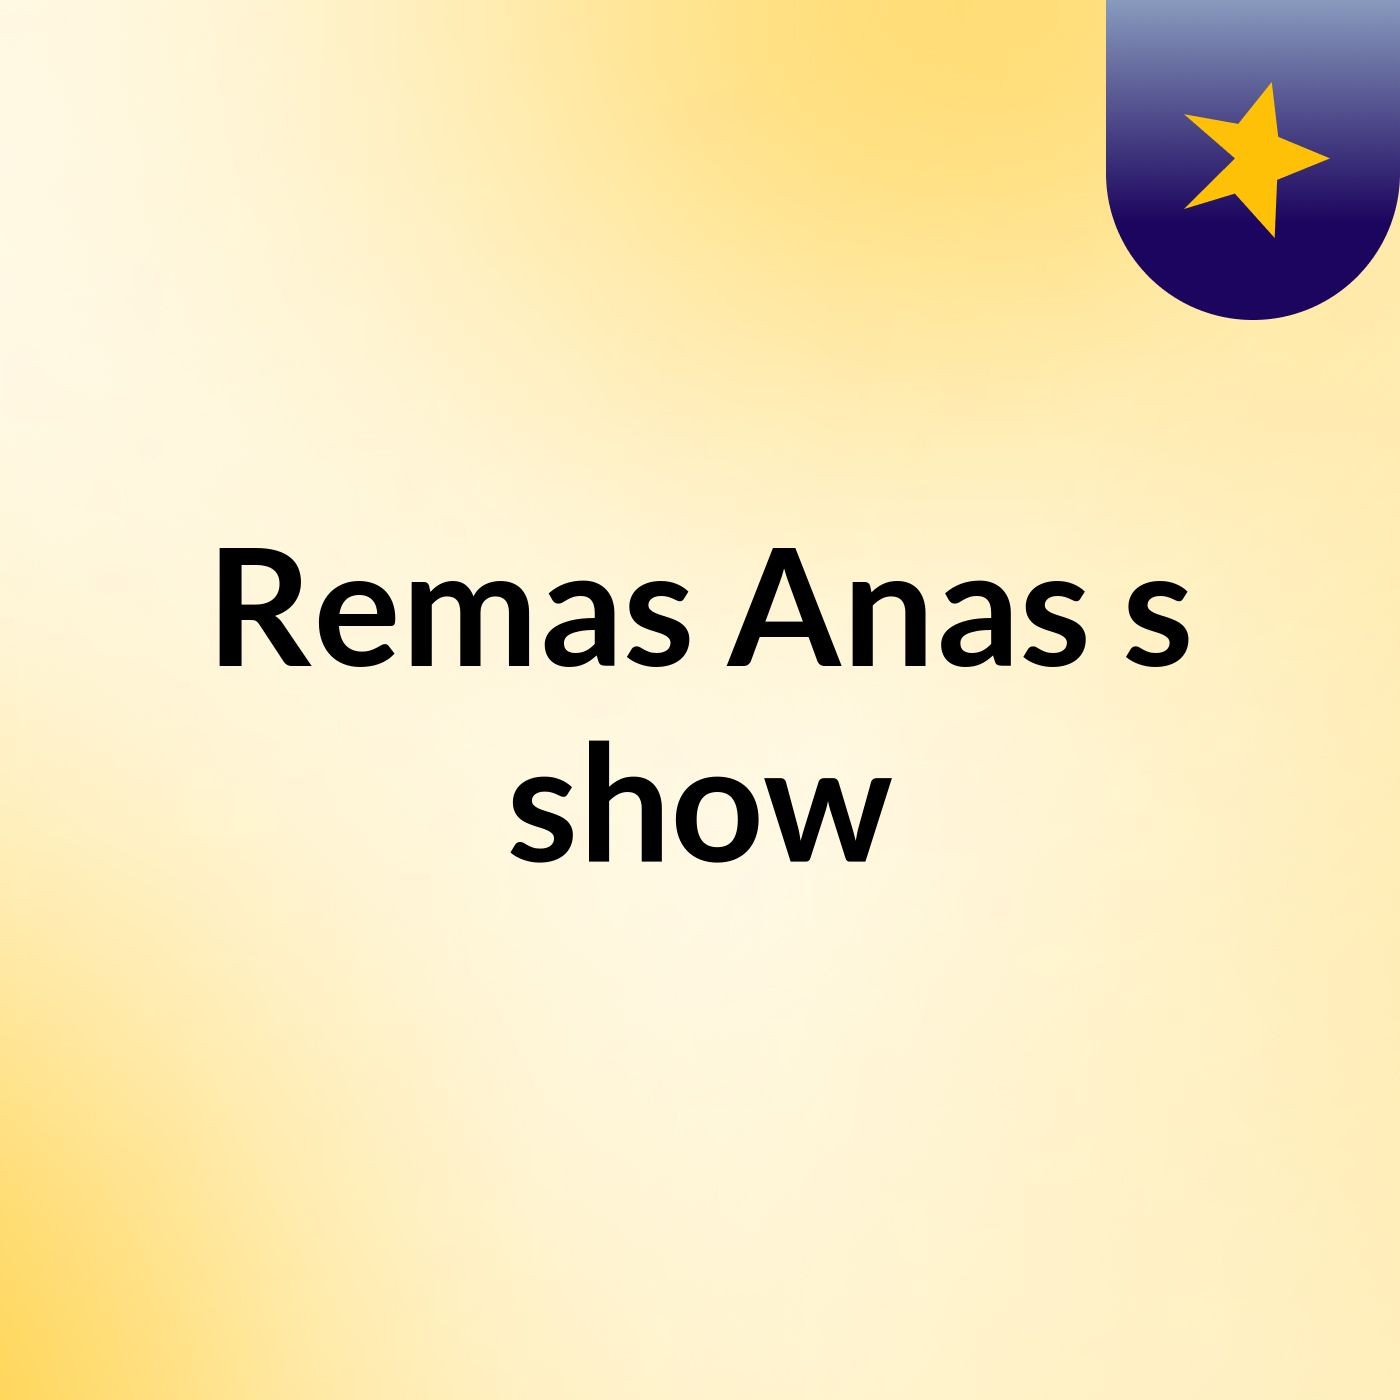 Remas Anas's show